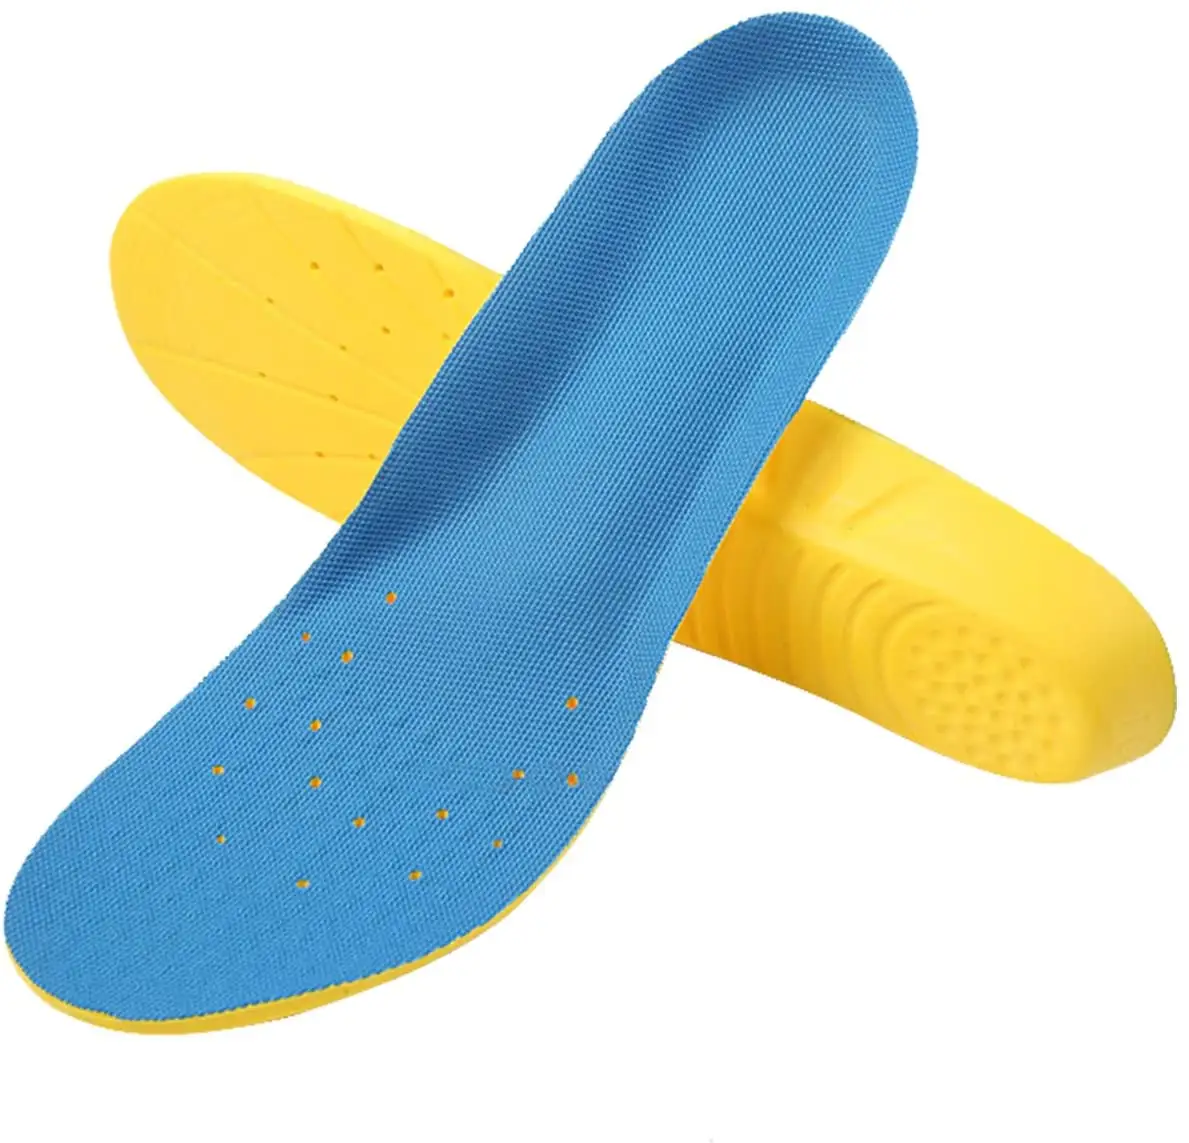 Scarpe sottopiede memory foam pu schiuma sottopiede scarpa soletta foglio per scarpe casual